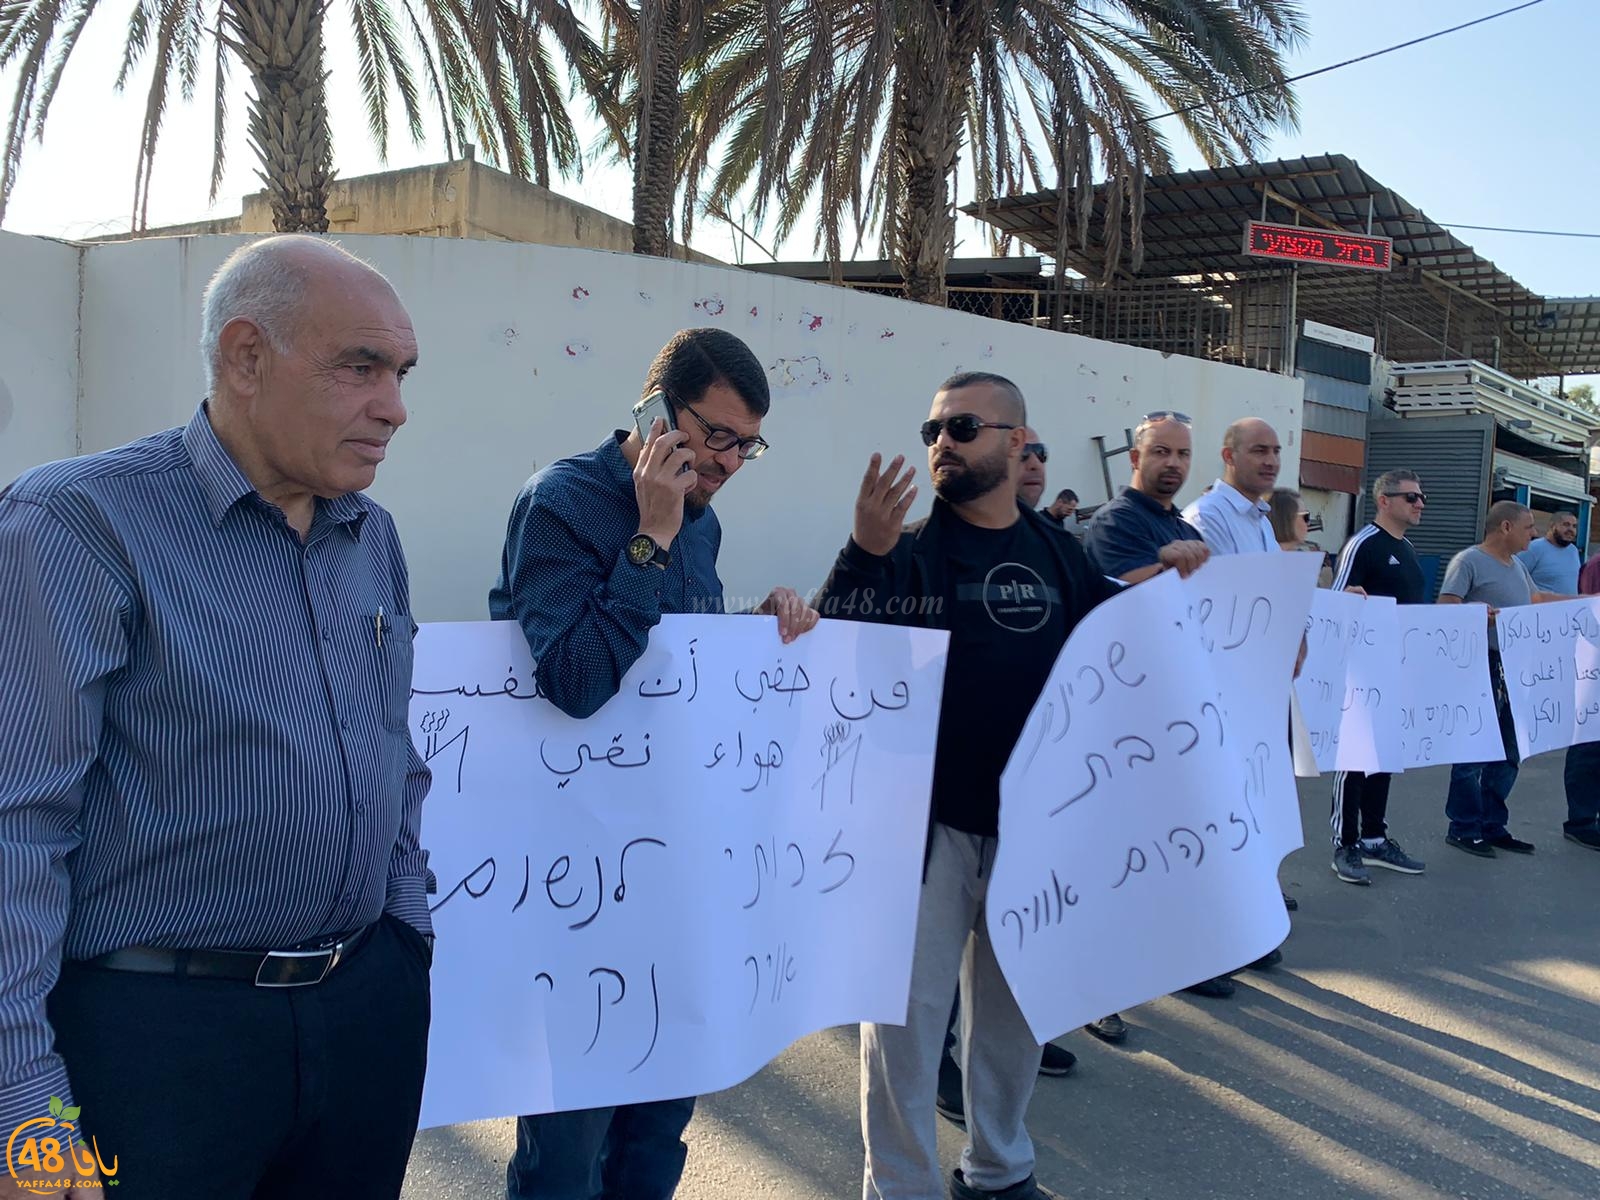 وقفة احتجاجية أمام مصنع دلكول للكيماويات في مدينة اللد 